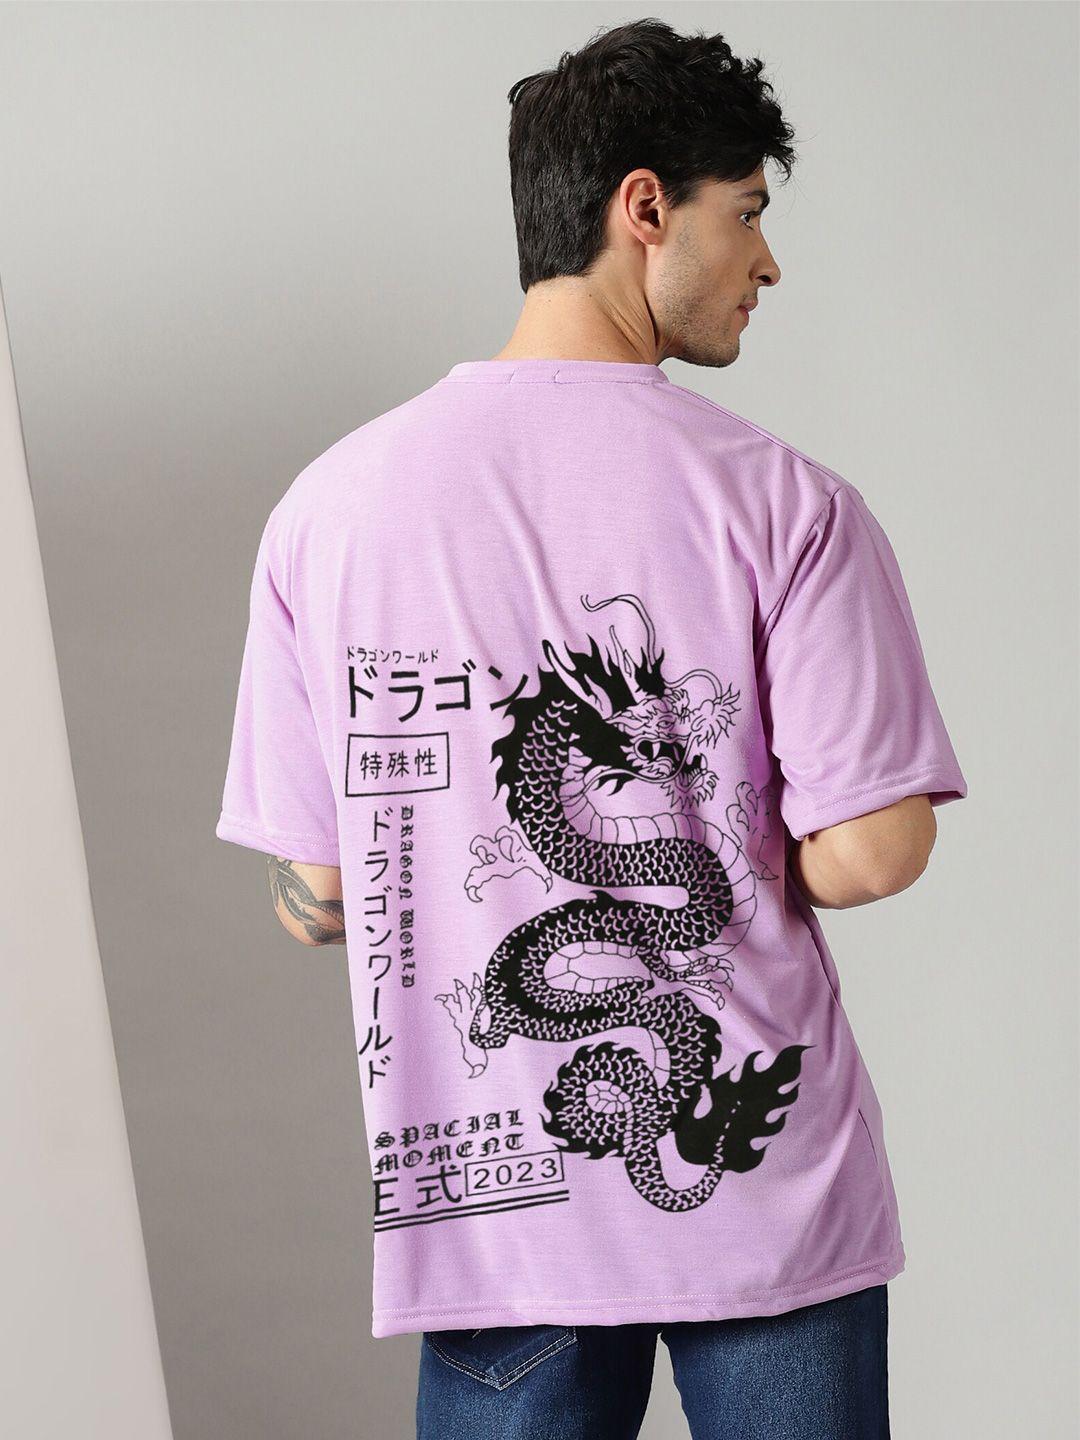 rodzen graphic printed drop-shoulder pure cotton oversize fit t-shirt